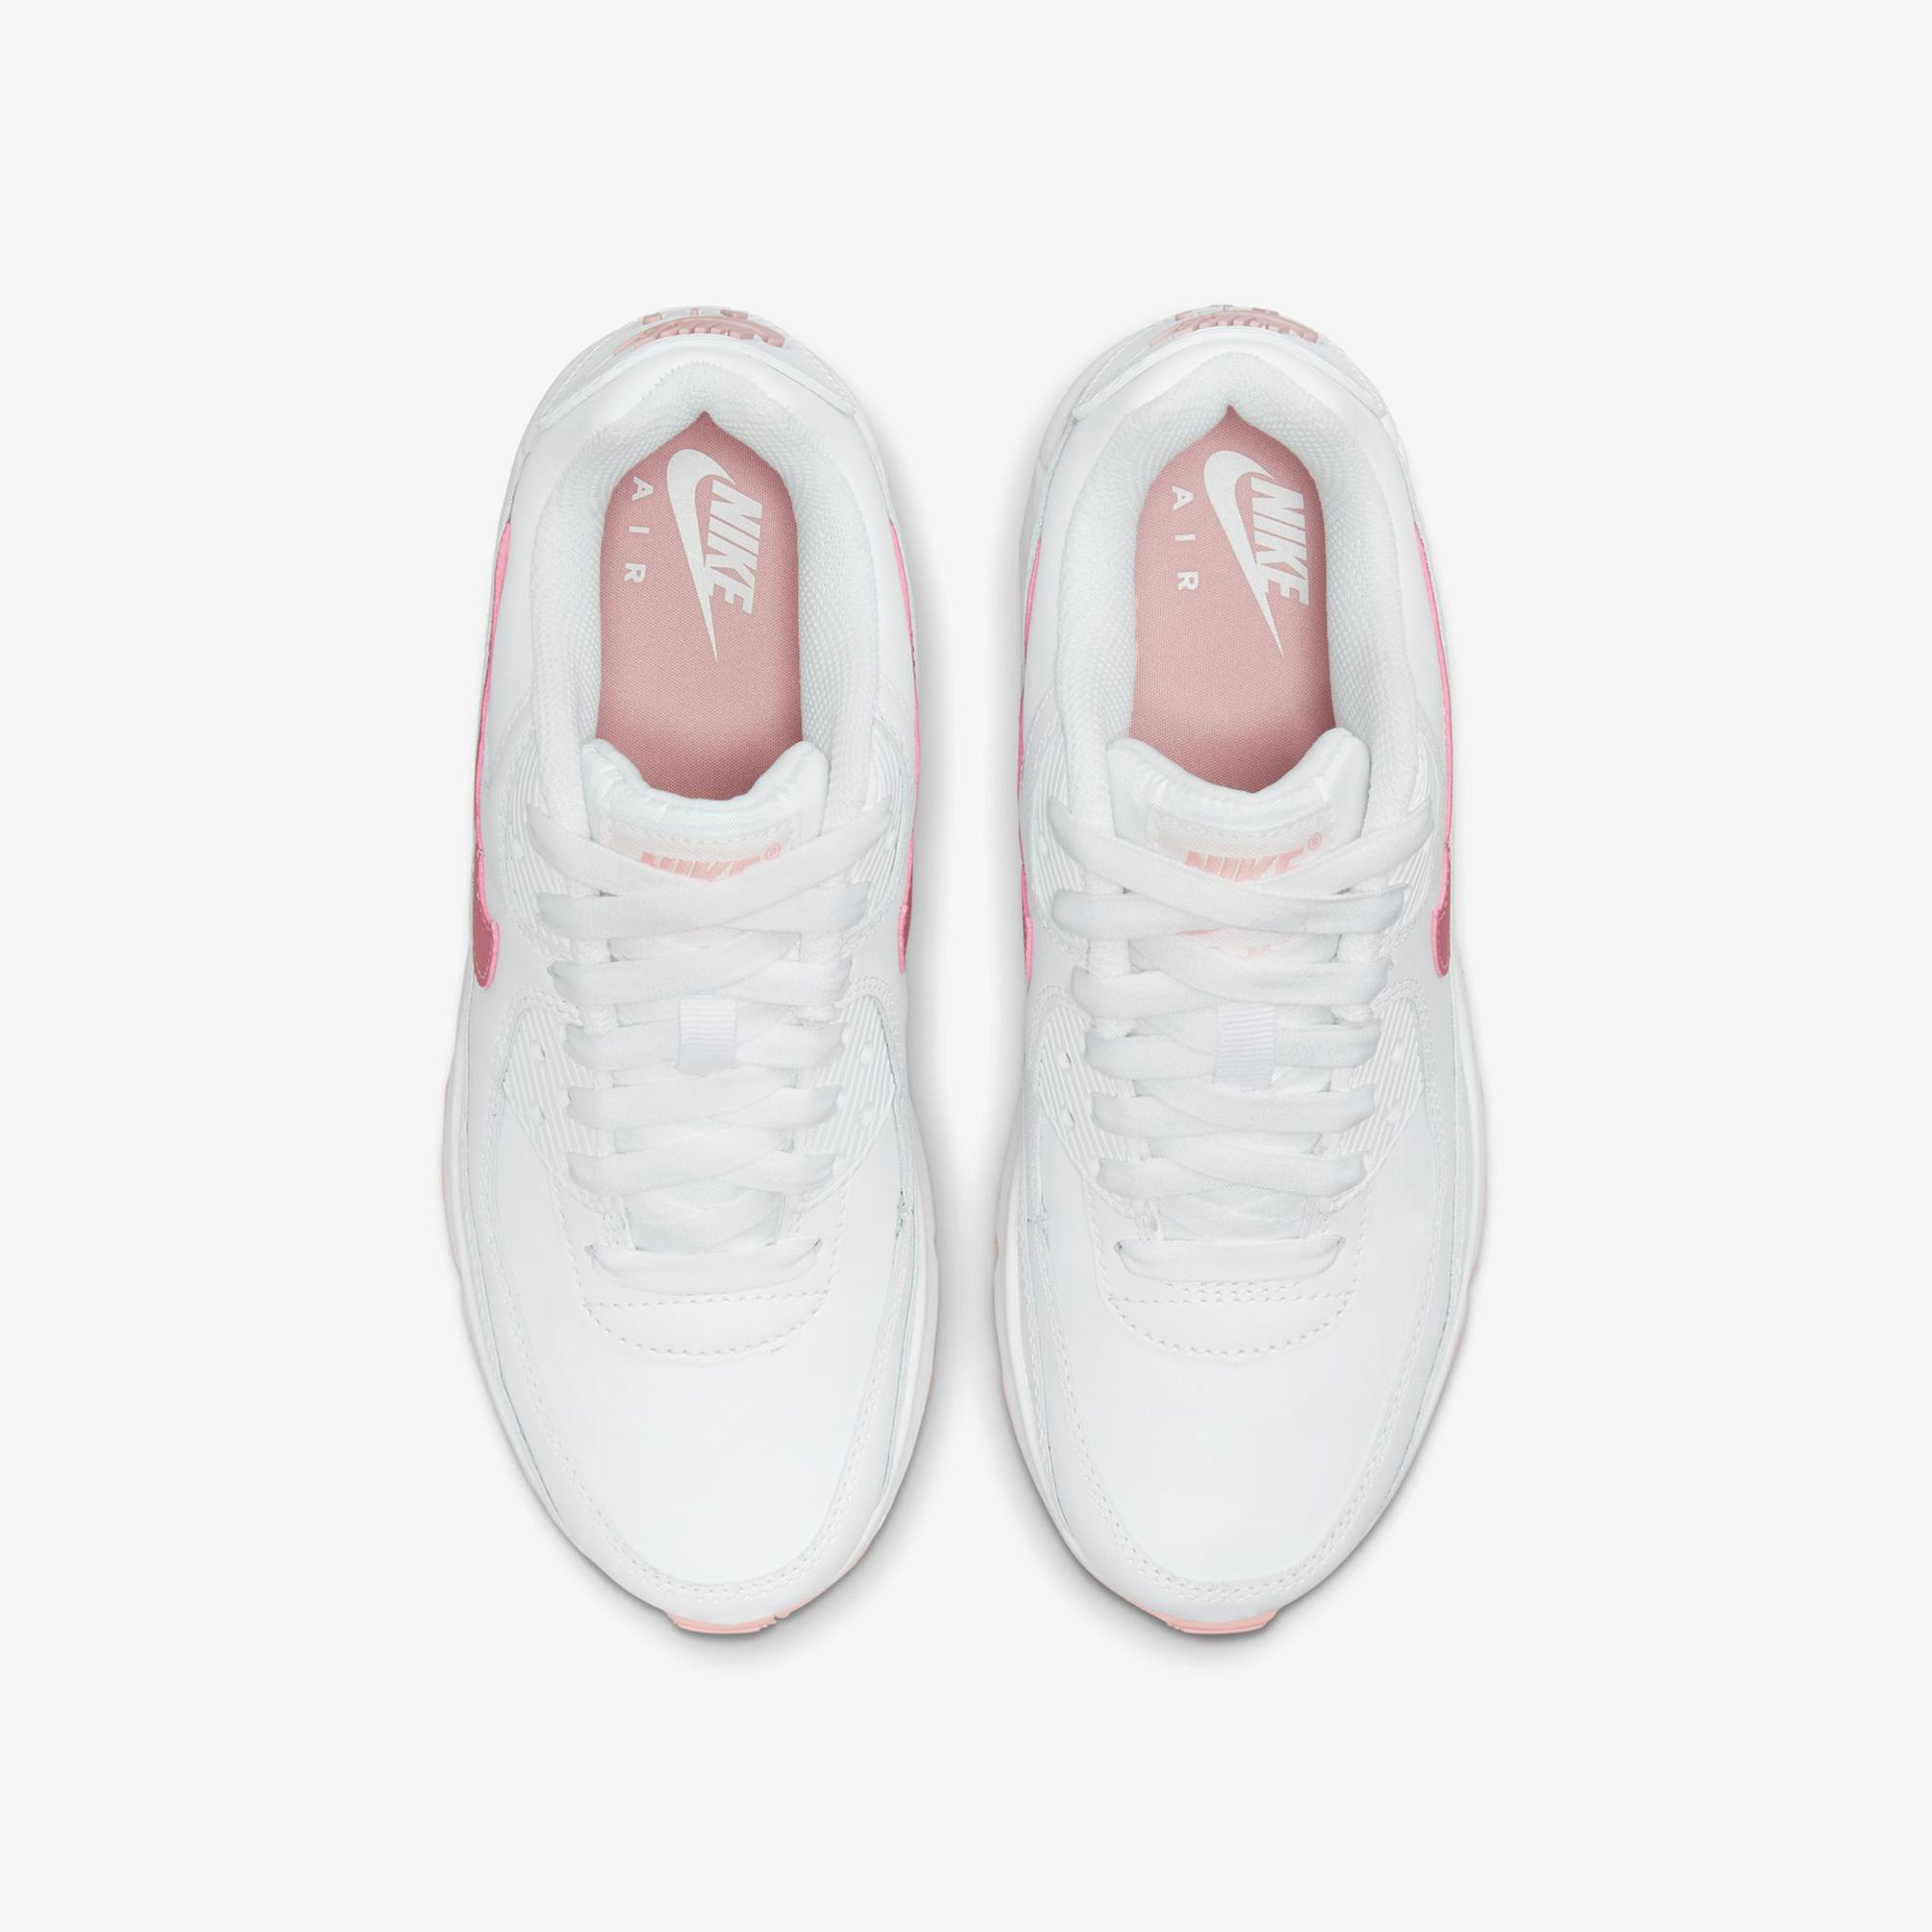  Nike Air Max 90 Leather Kadın Beyaz Spor Ayakkabı